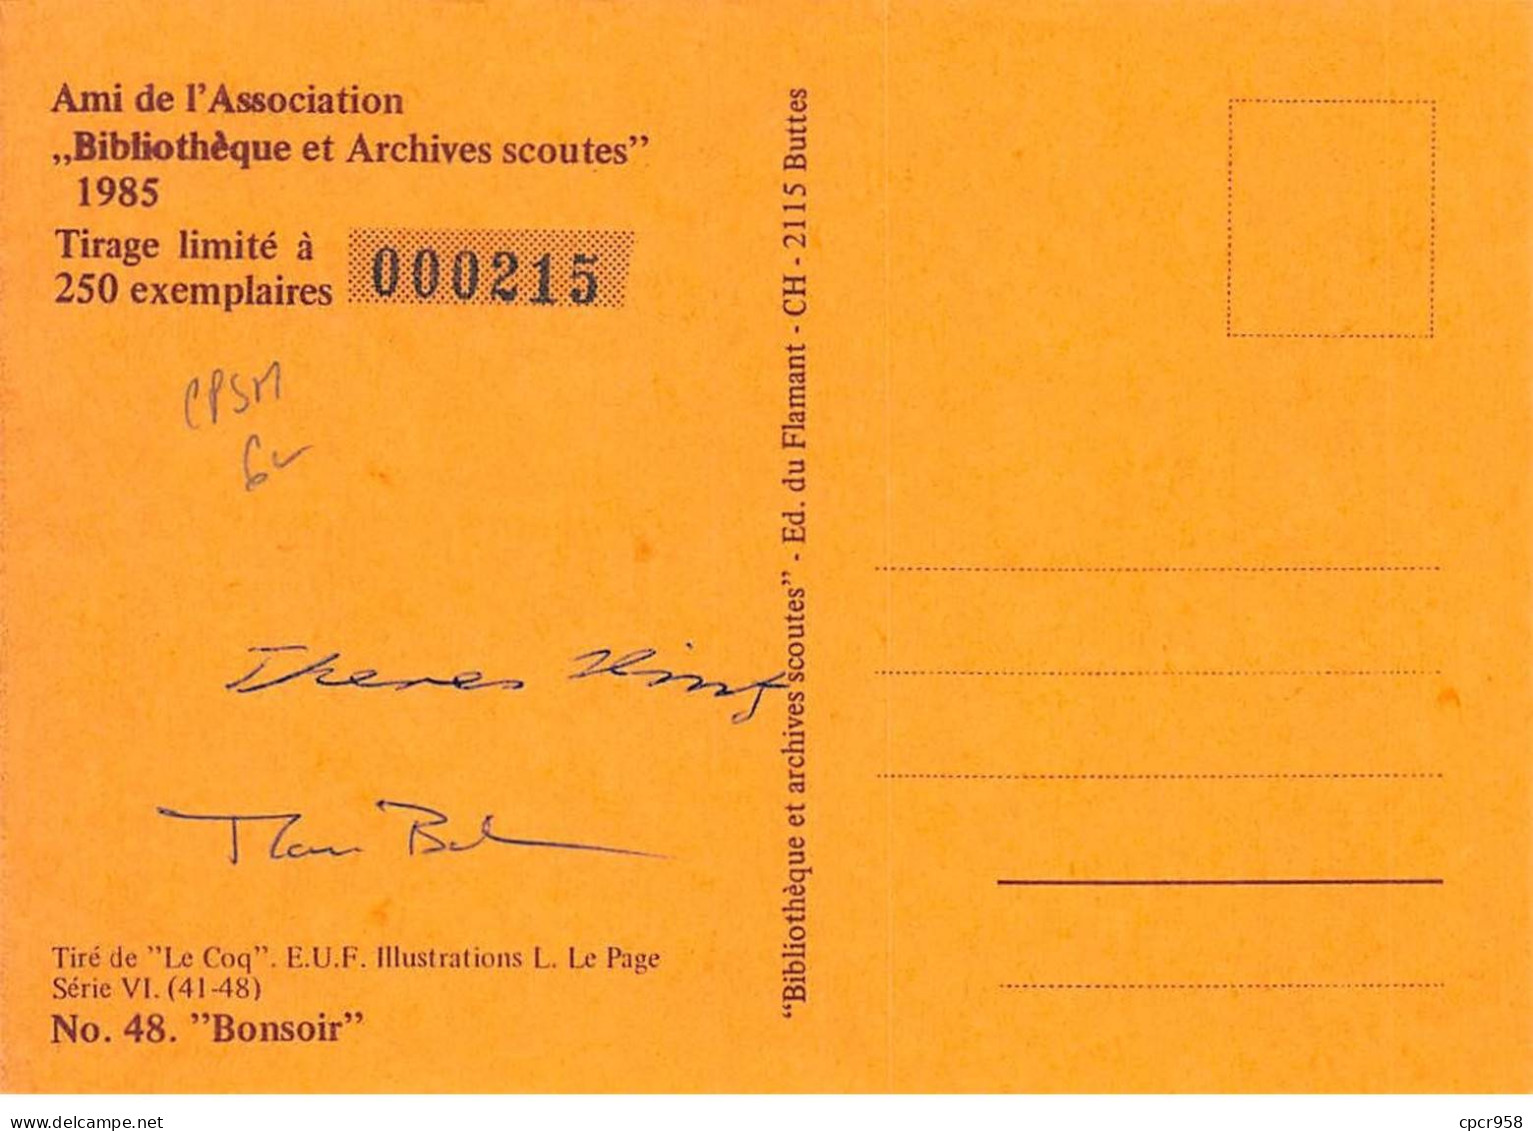 SCOUTISME - SAN36110 - Ami De L'Association Bibliothèque Et Archives Scoutes 1985 - N°48 "Bonsoir" - CPSM 15x10 Cm - Scoutismo